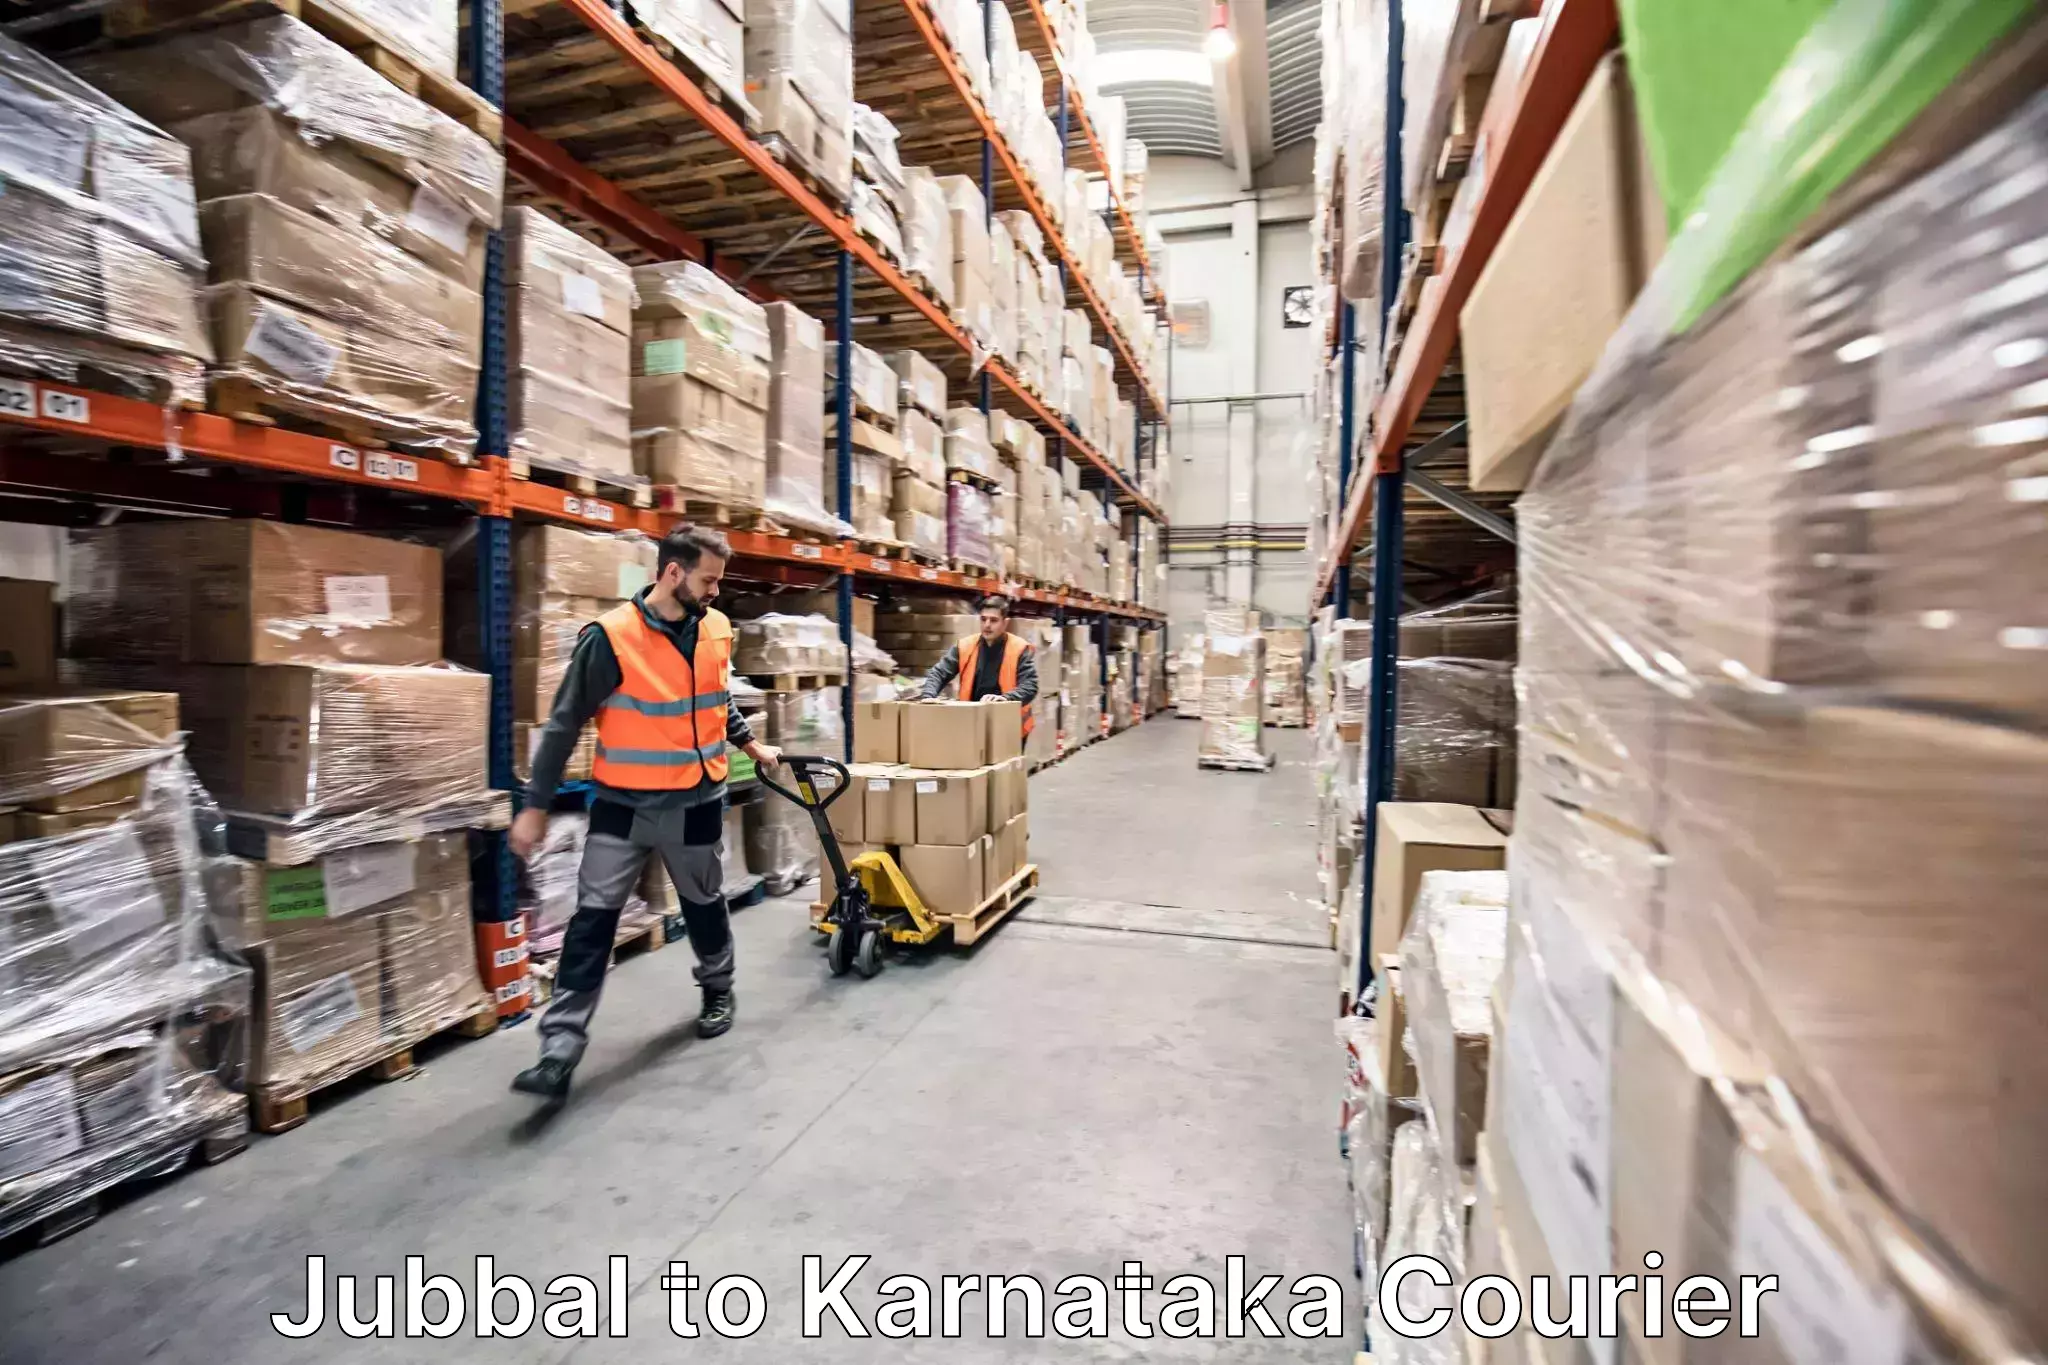 Furniture moving experts Jubbal to Gulbarga